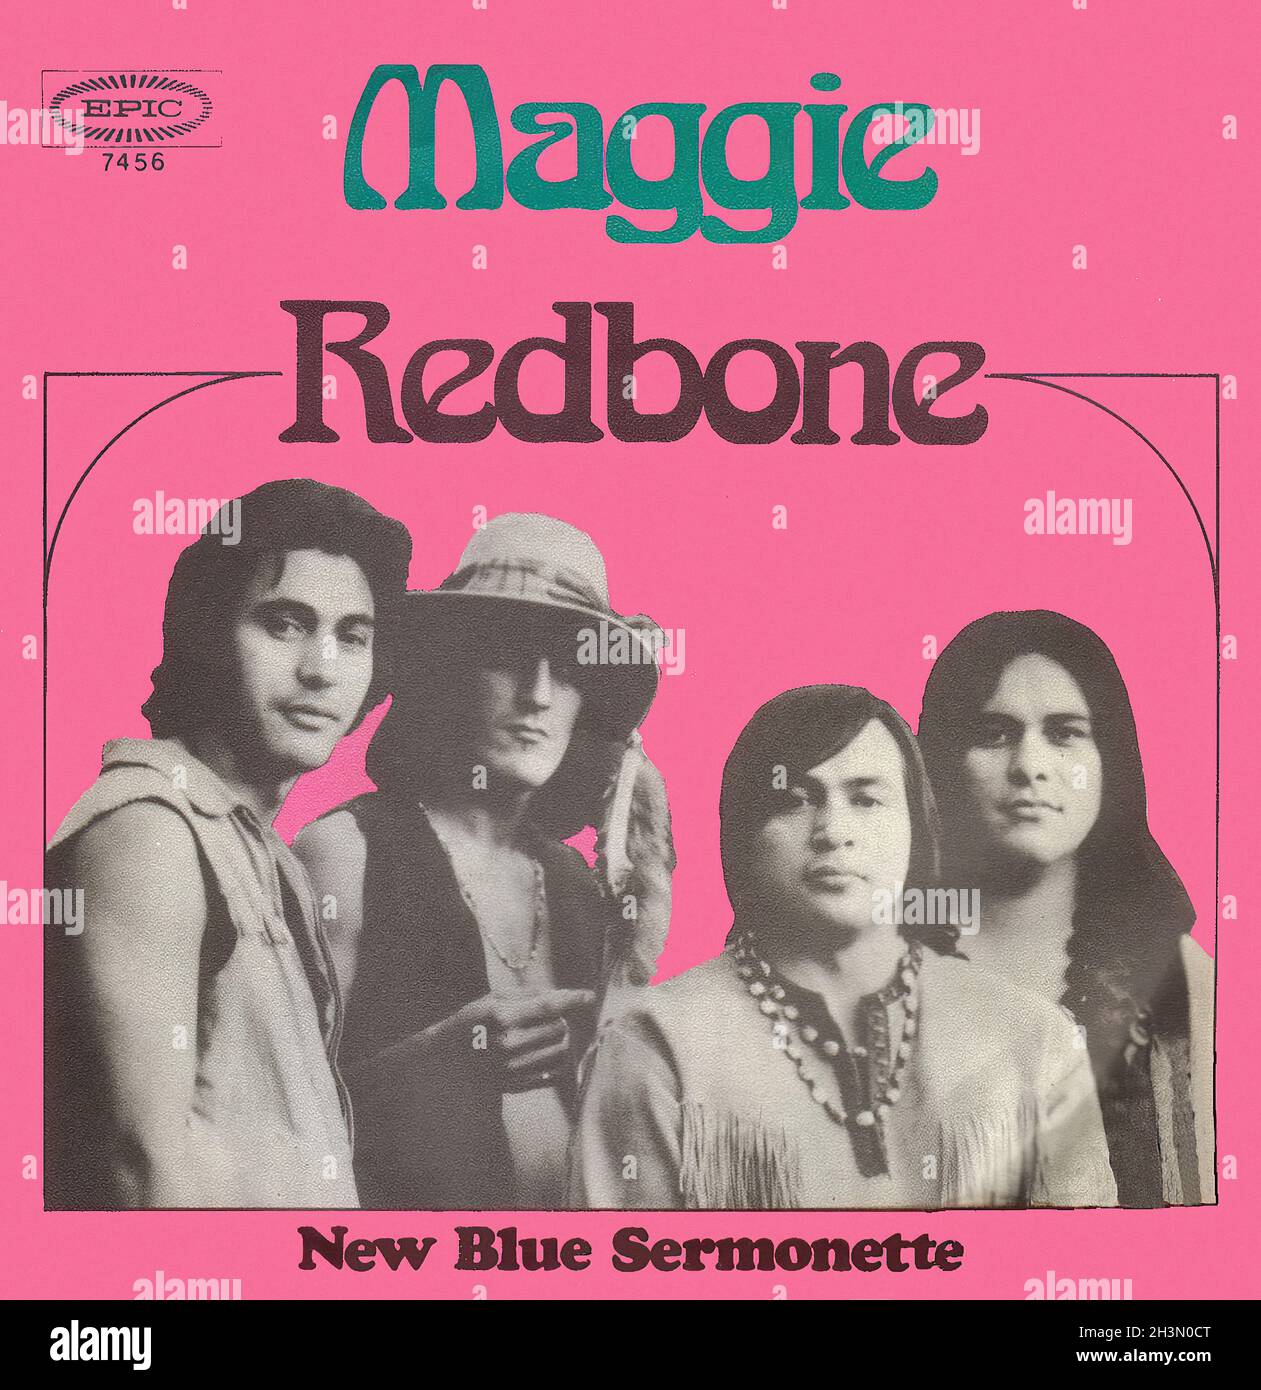 Redbone - Come and Get Your Love (Tradução